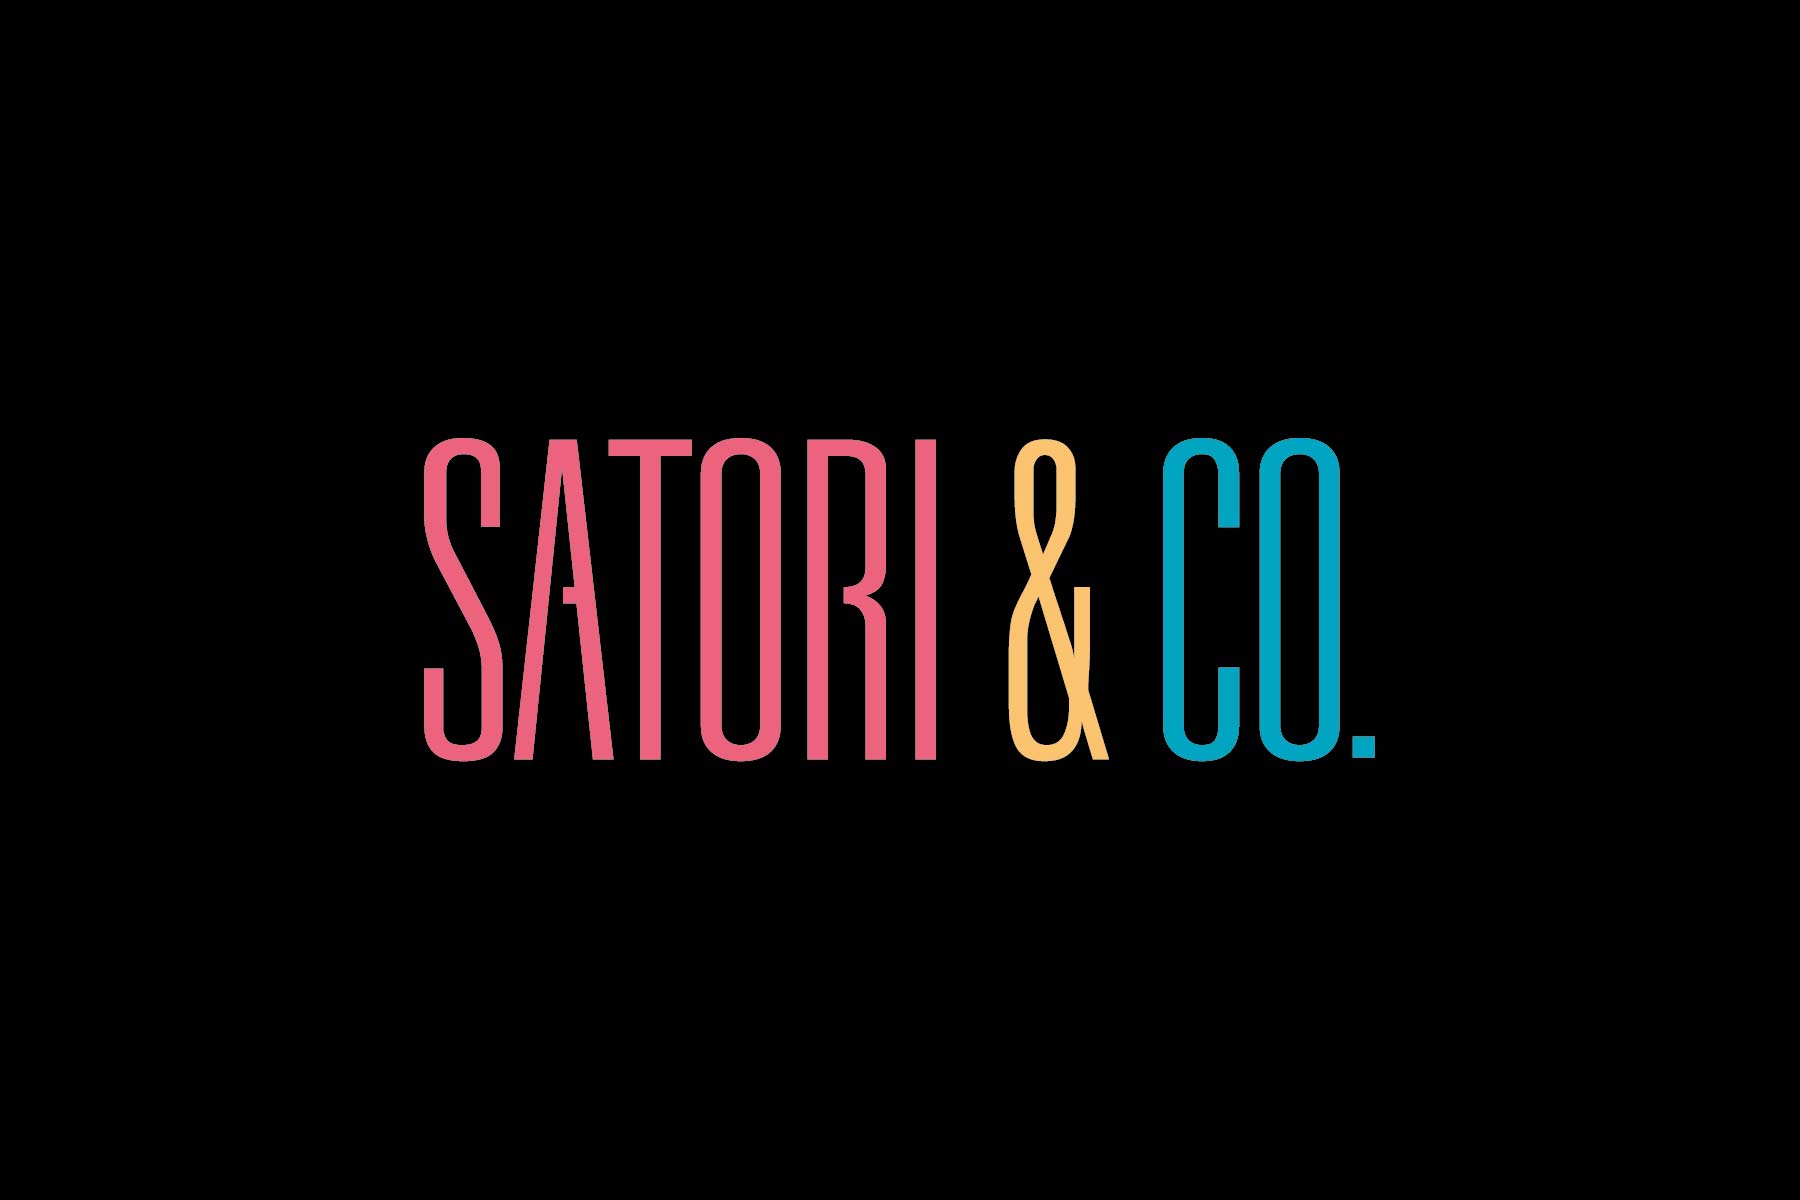 Satori & Co’s new Value Video